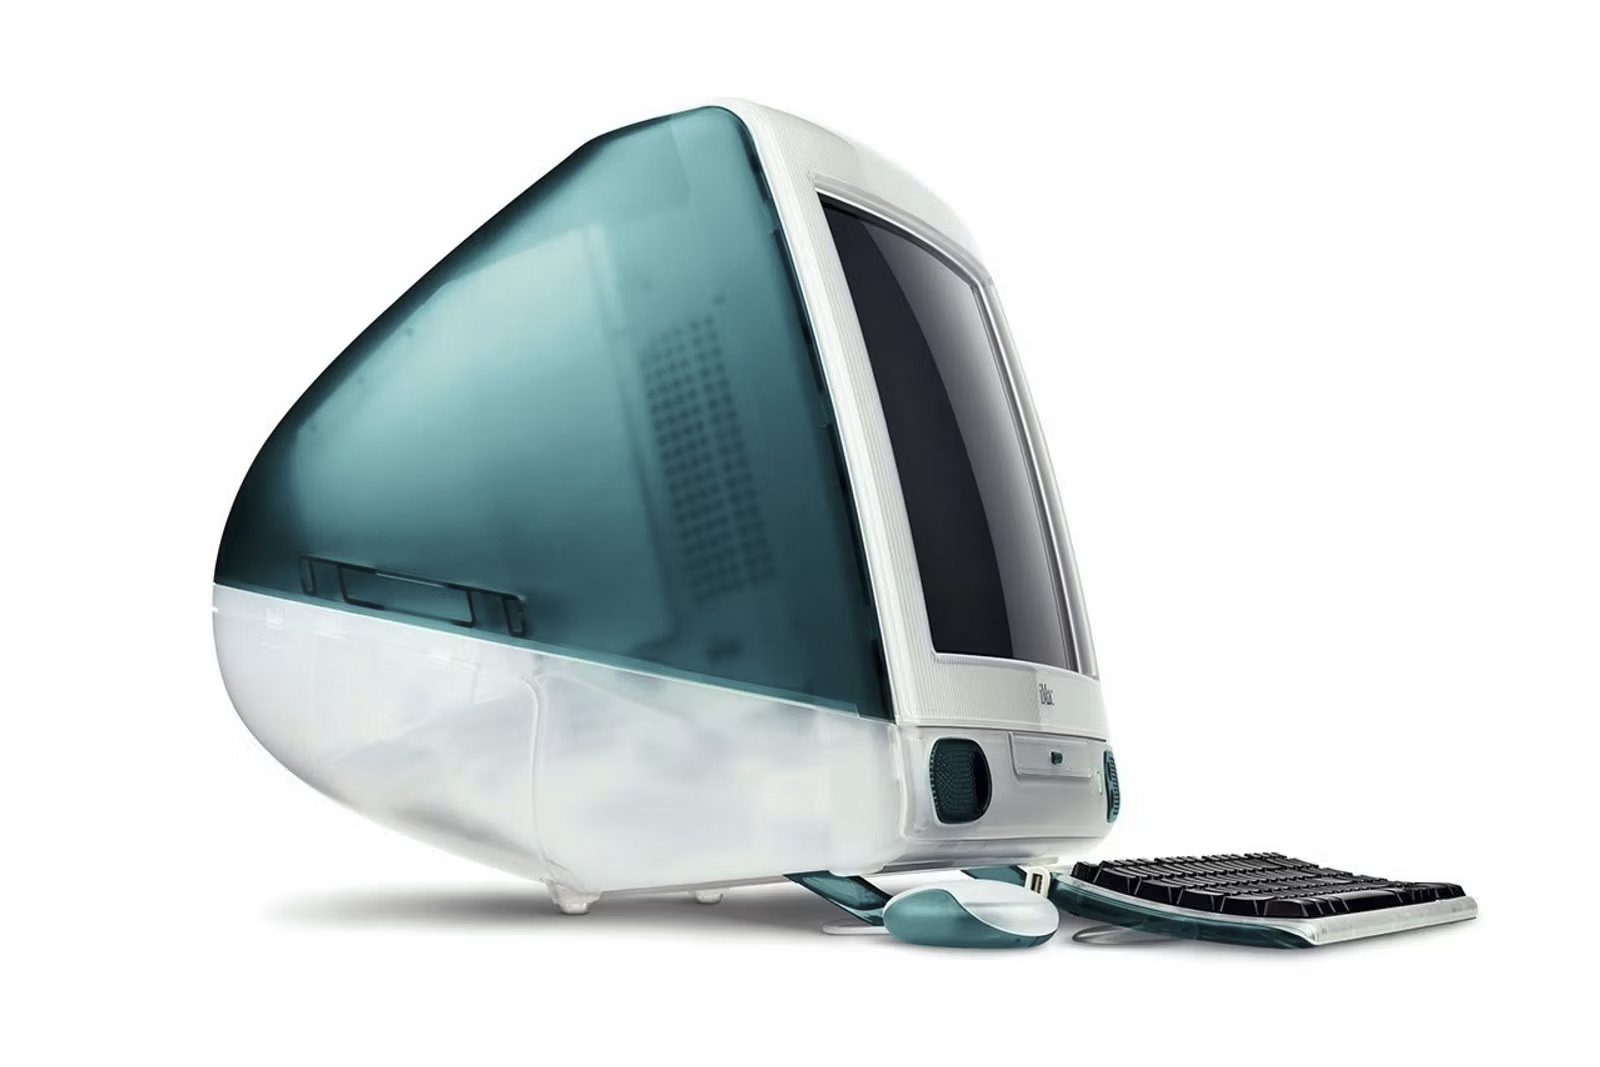 Cuộc gặp duyên nợ giữa Tim Cook và Steve Jobs vào lúc Apple sắp phá sản - 2